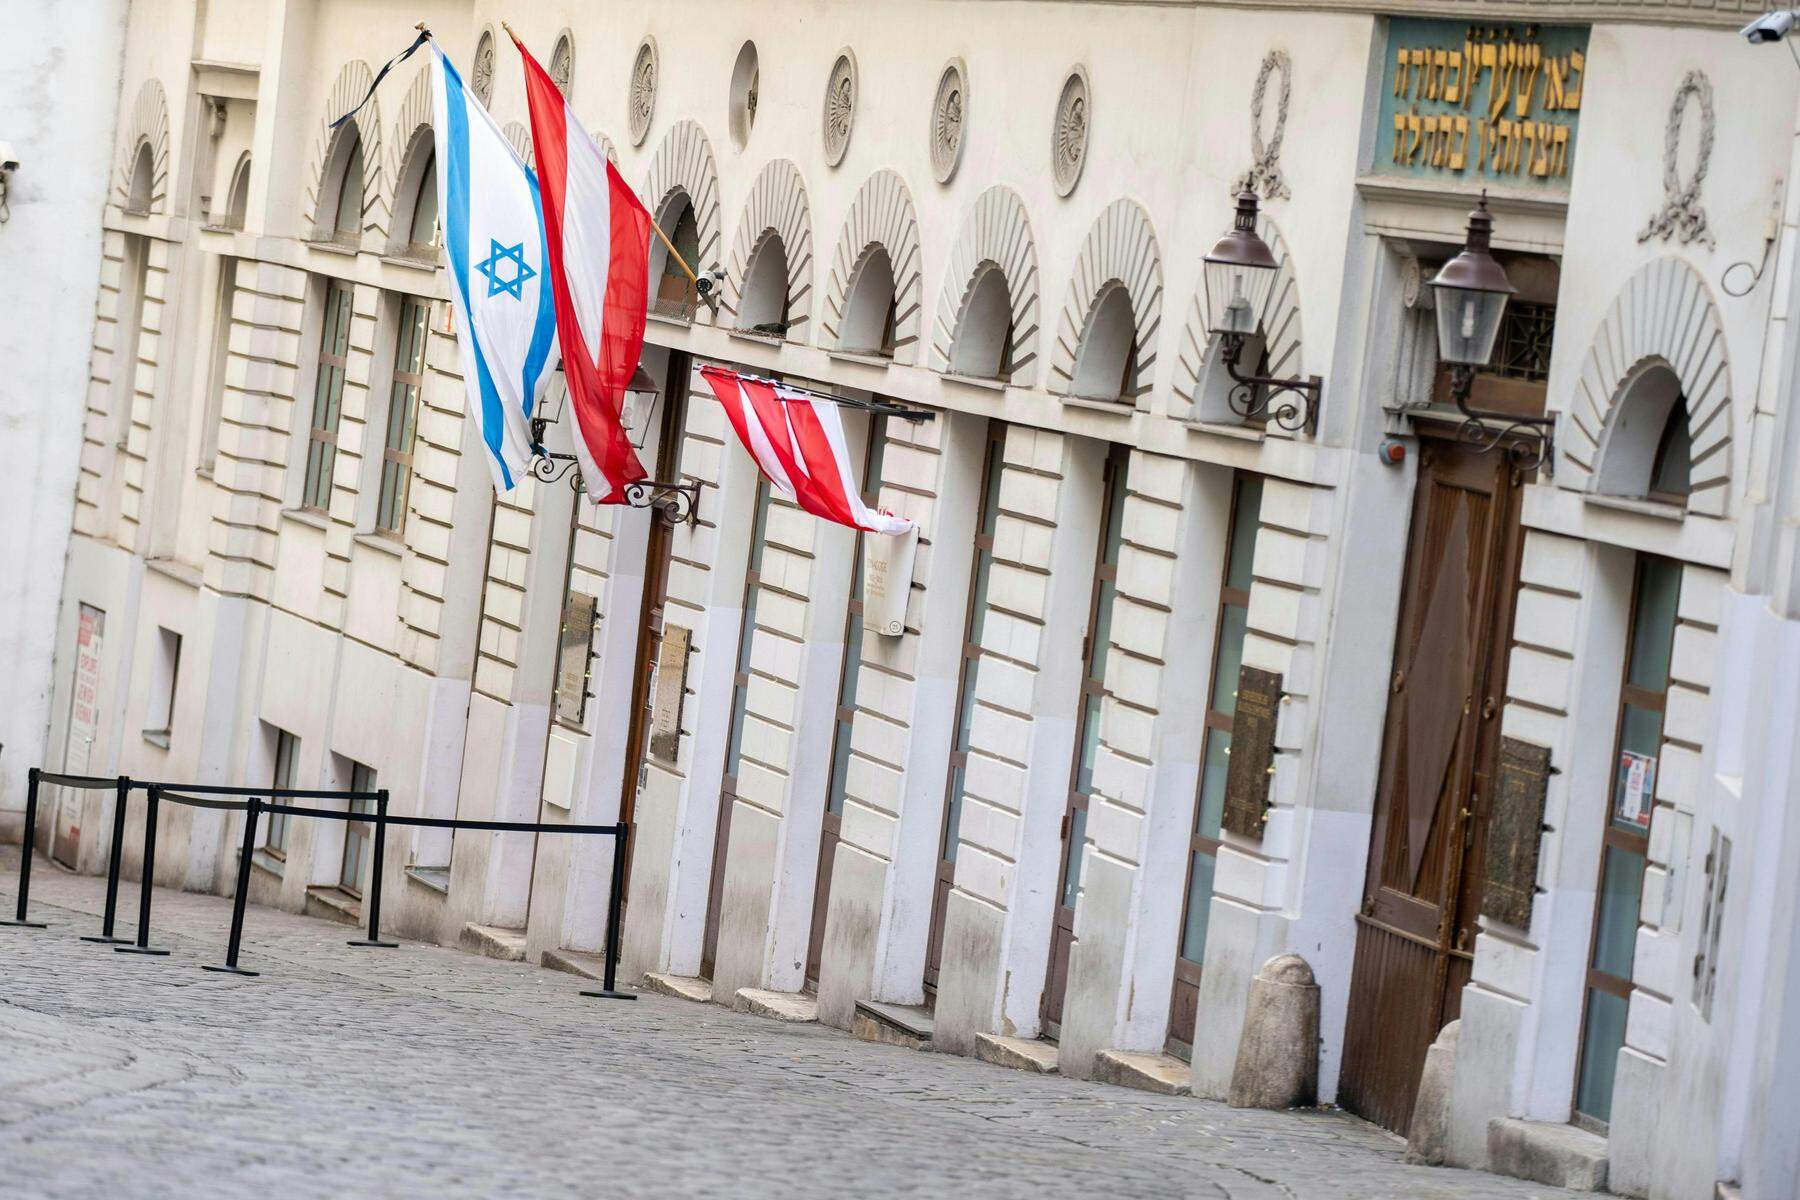 Nach Fahnen-Vorfall  Überwachung für Wiens Synagoge ausgeweitet